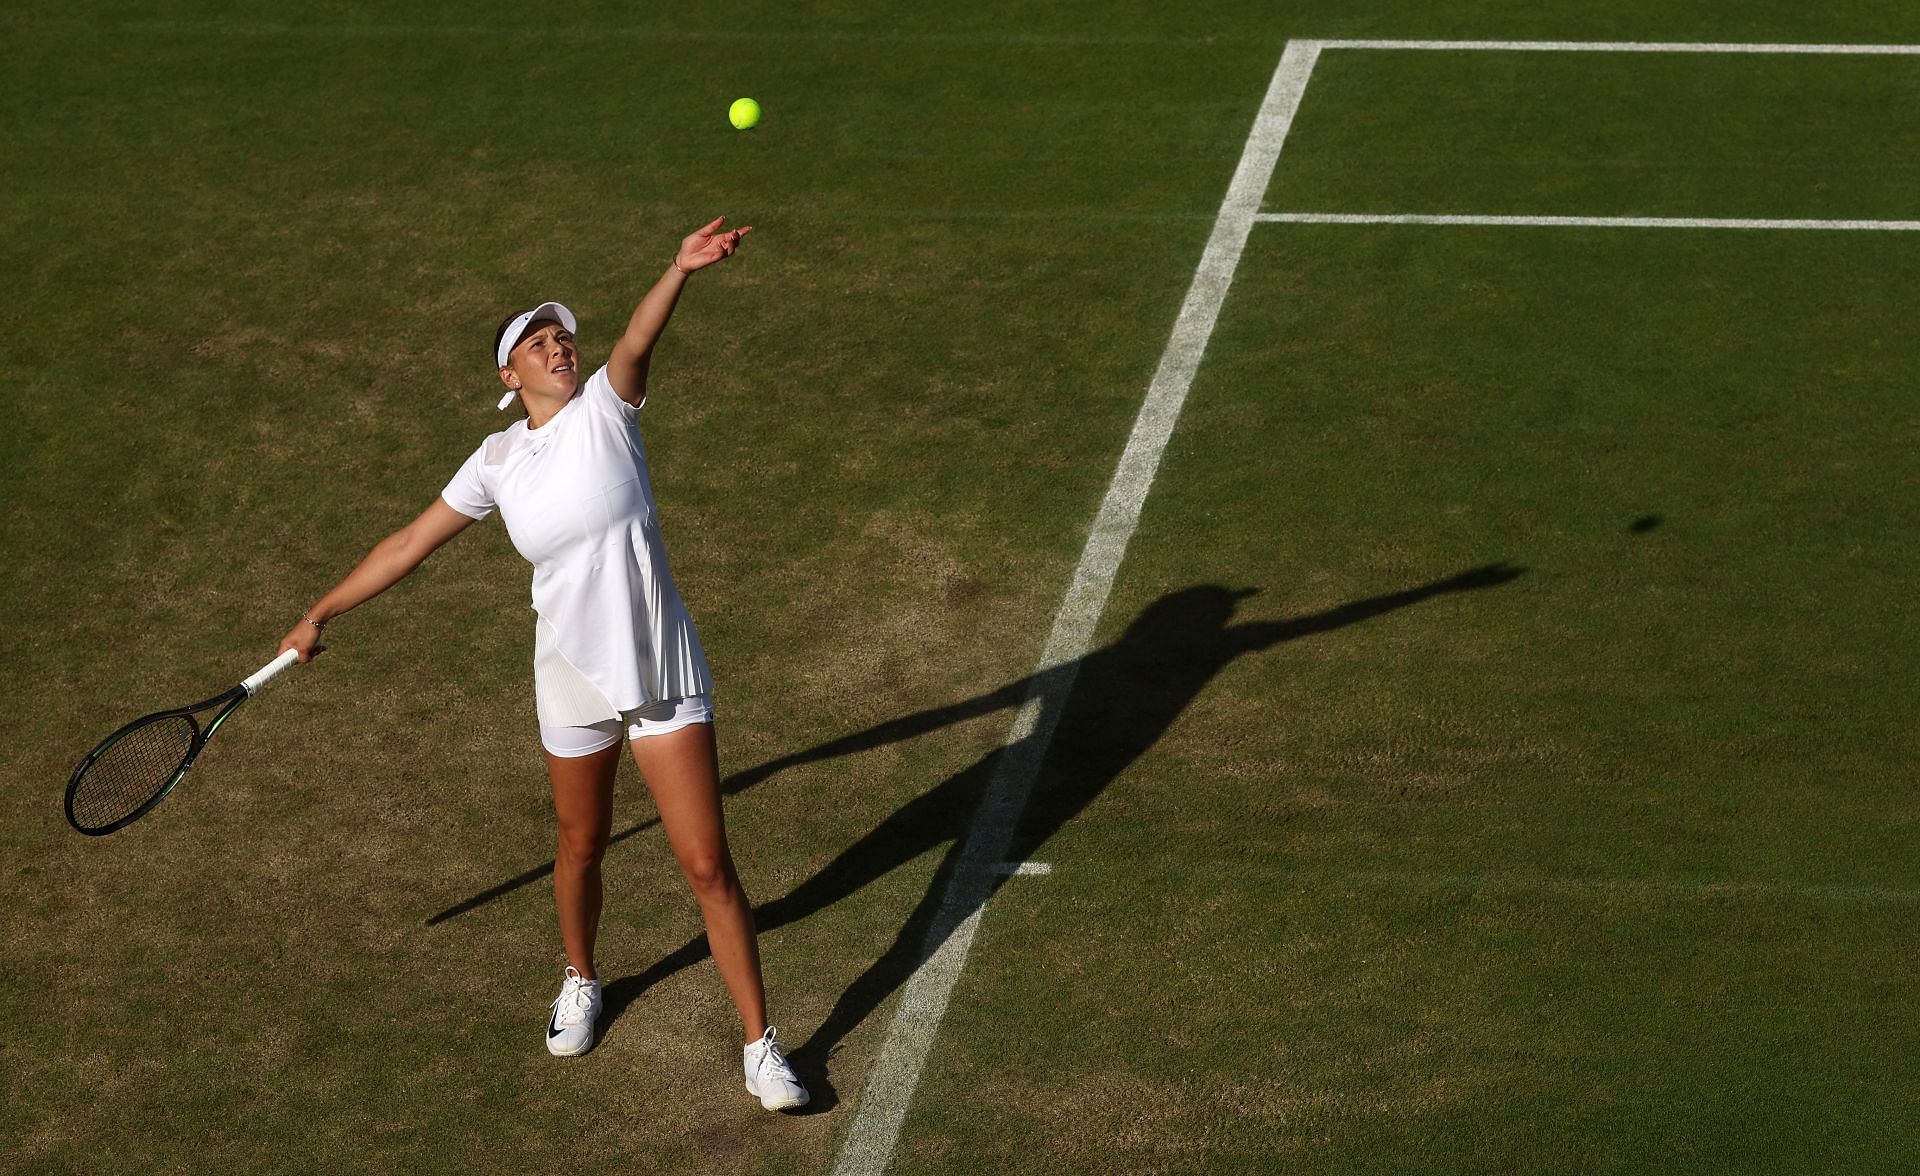 Amanda Anisimova at the 2022 Wimbledon Championships